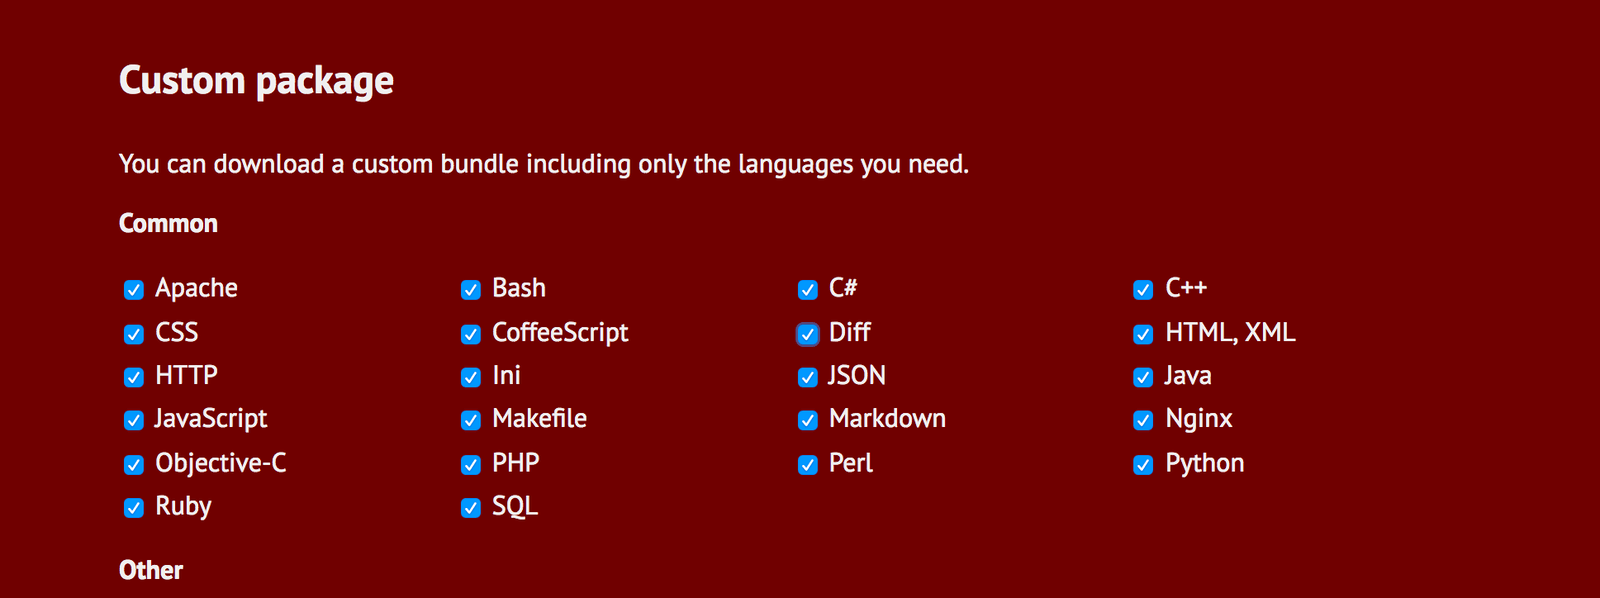 CDNにホストされたhighlight.jsを使う場合、commonの一覧に表示されている言語のみシンタックスハイライトできる